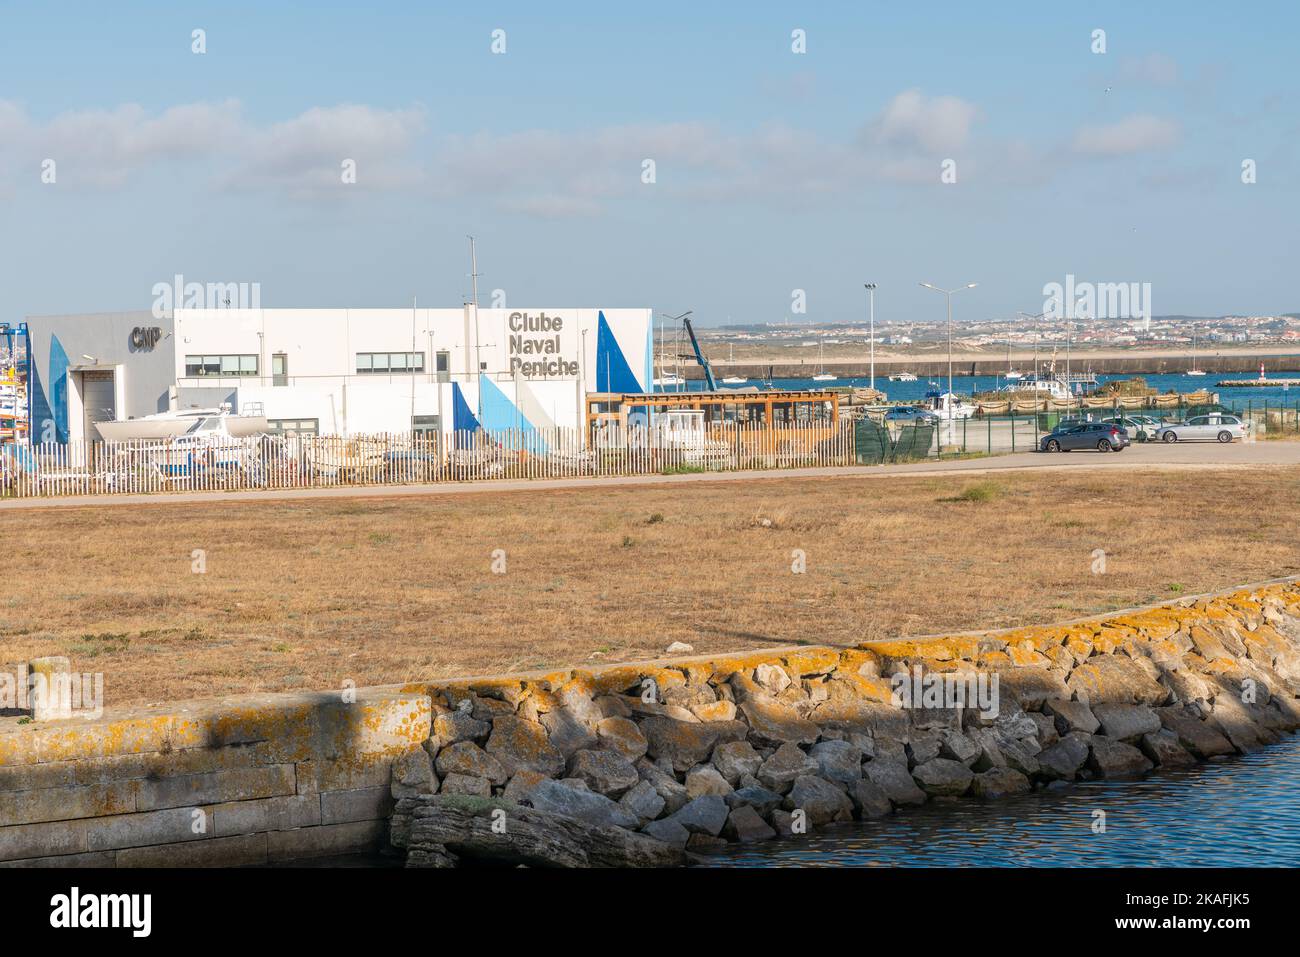 The building of the Clube Naval de Peniche in the city of Peniche, Leiria, Portugal Stock Photo